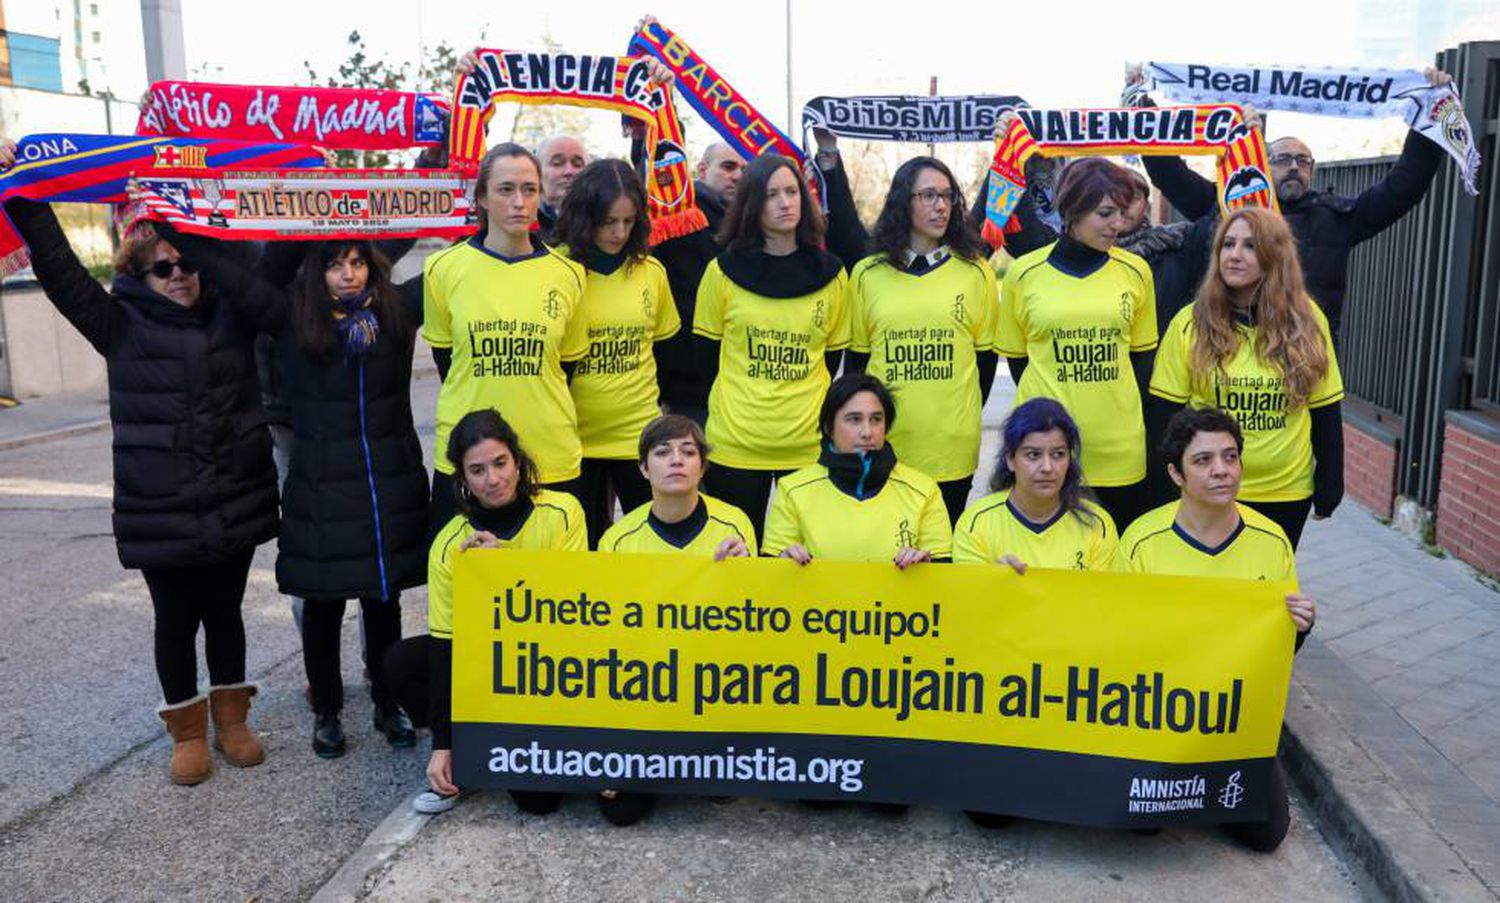 Protesto organizado pela Anistia Internacional ontem em frente à embaixada da Arábia Saudita em Madri contra a prisão de Loujain al-Hathloul.